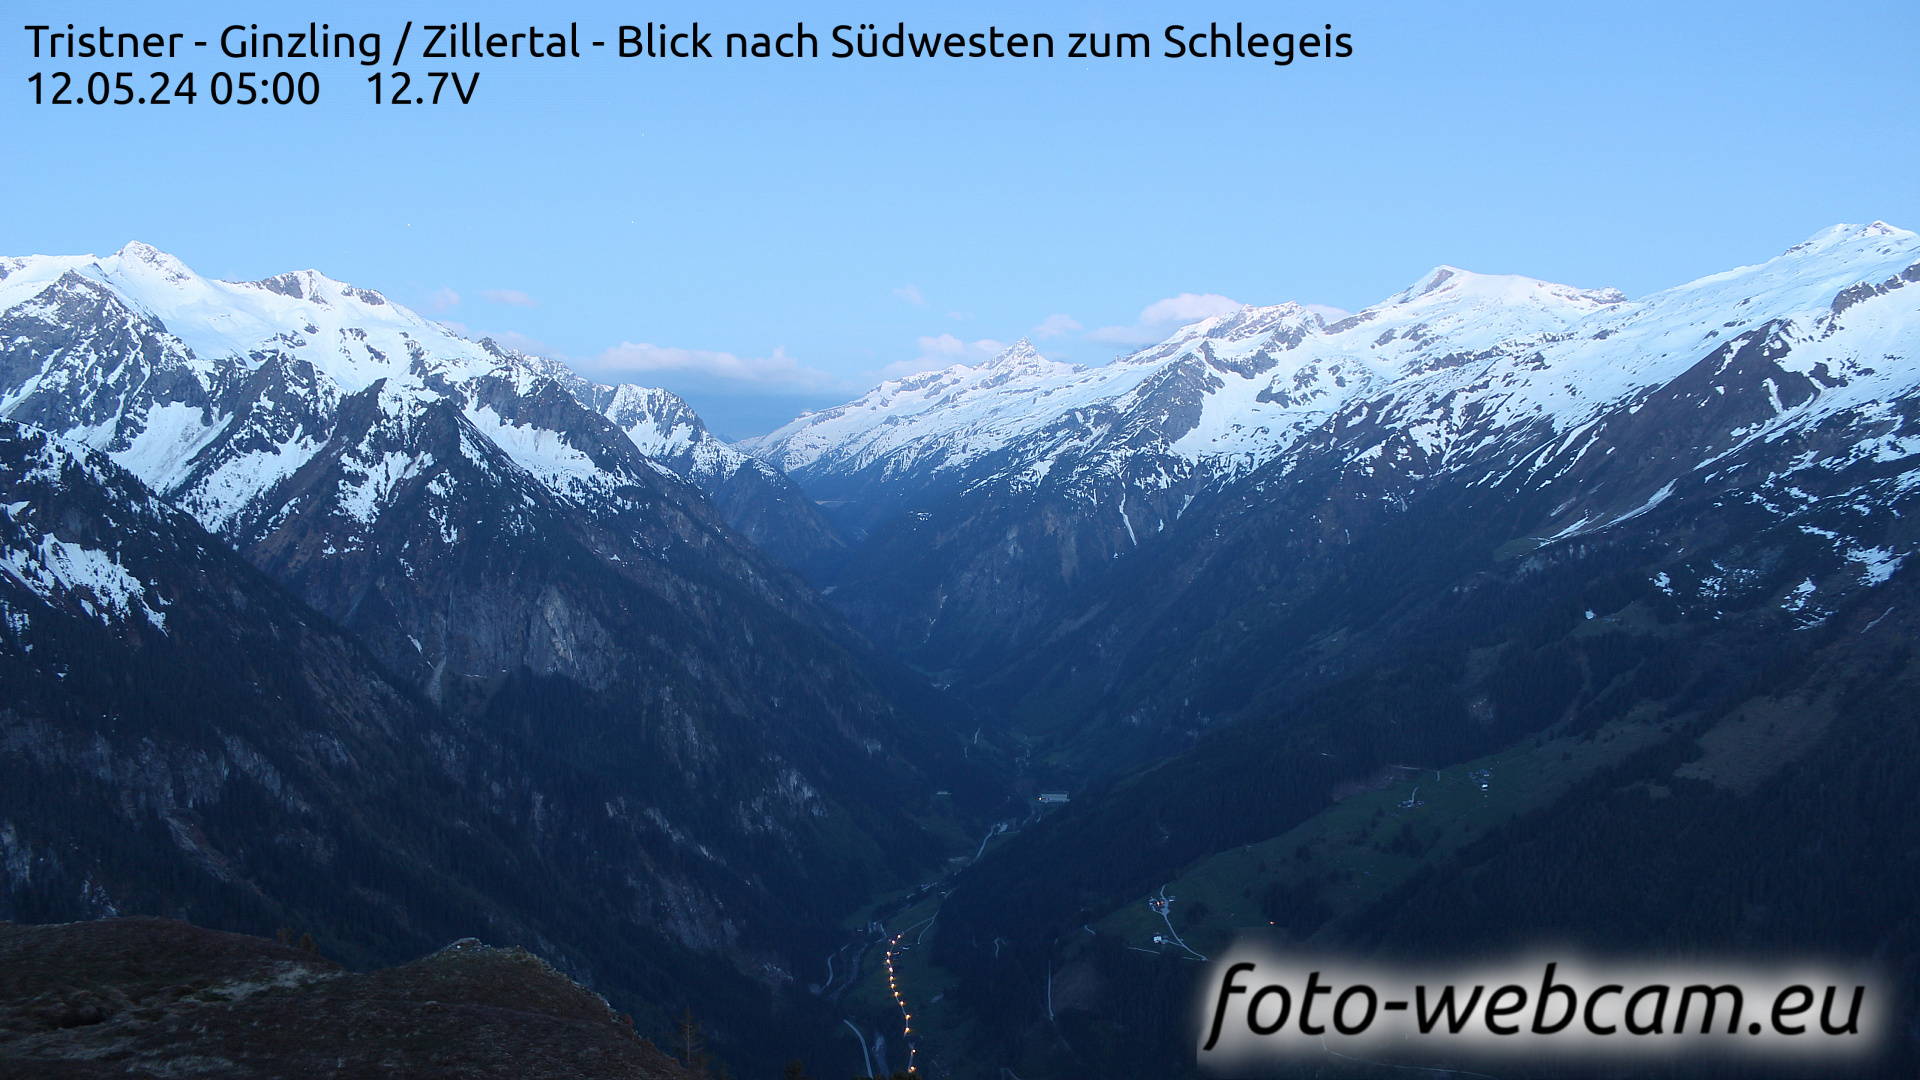 Mayrhofen Je. 05:01